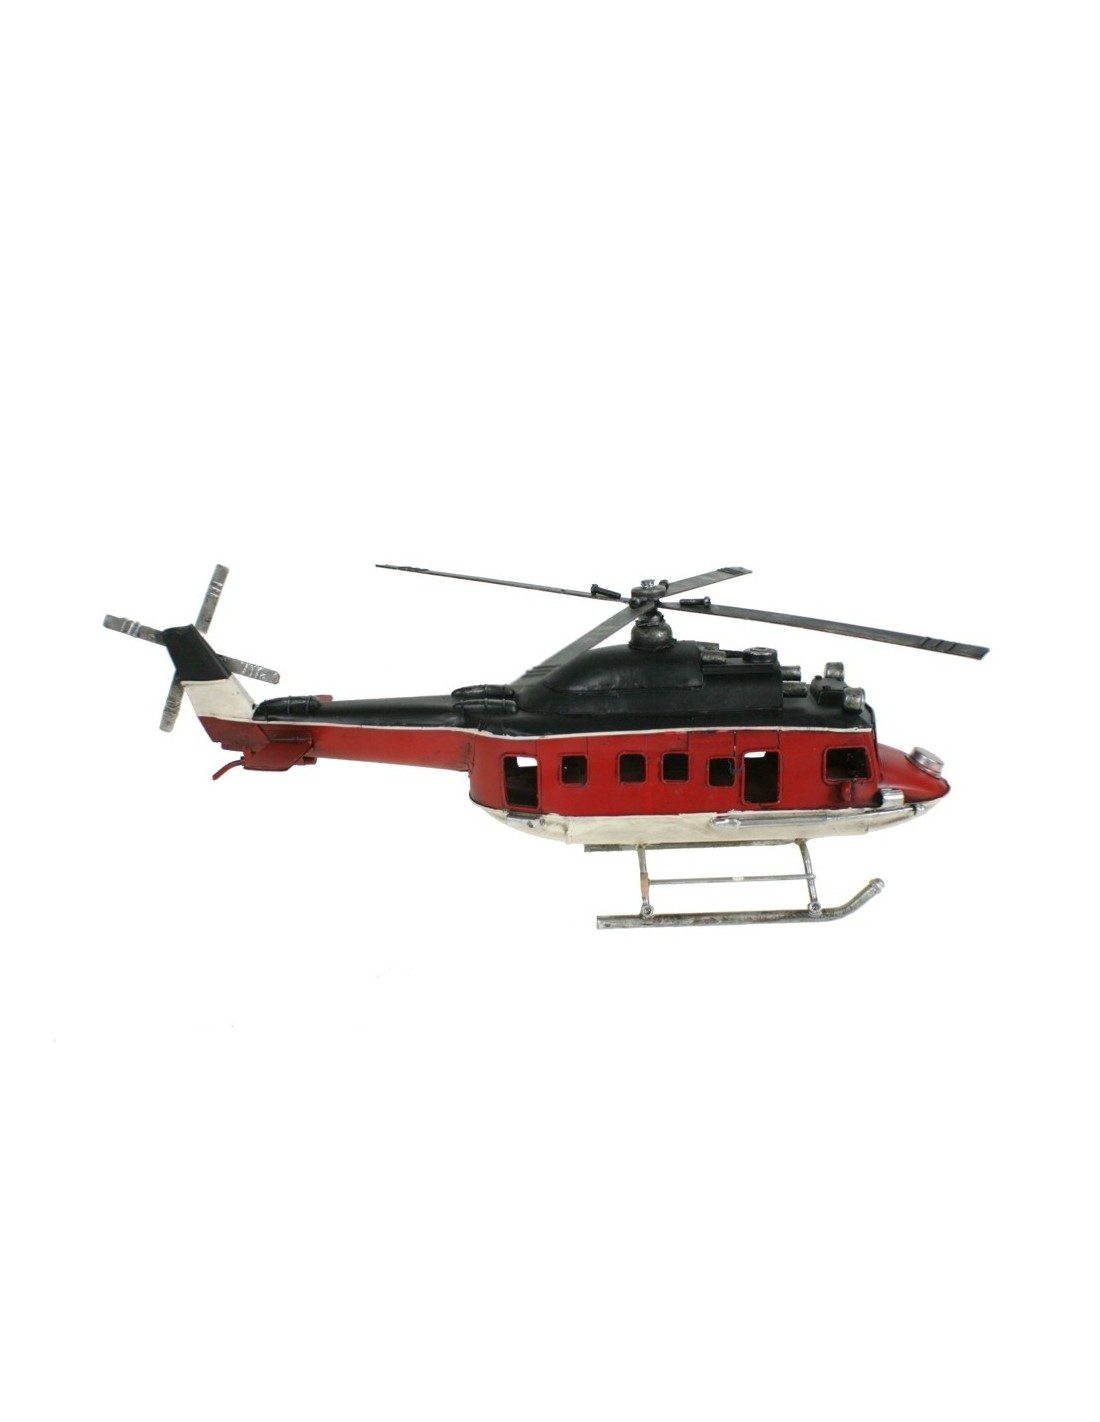 Grand hélicoptère 4 pales en métal rouge. Mesures: 50 cm.